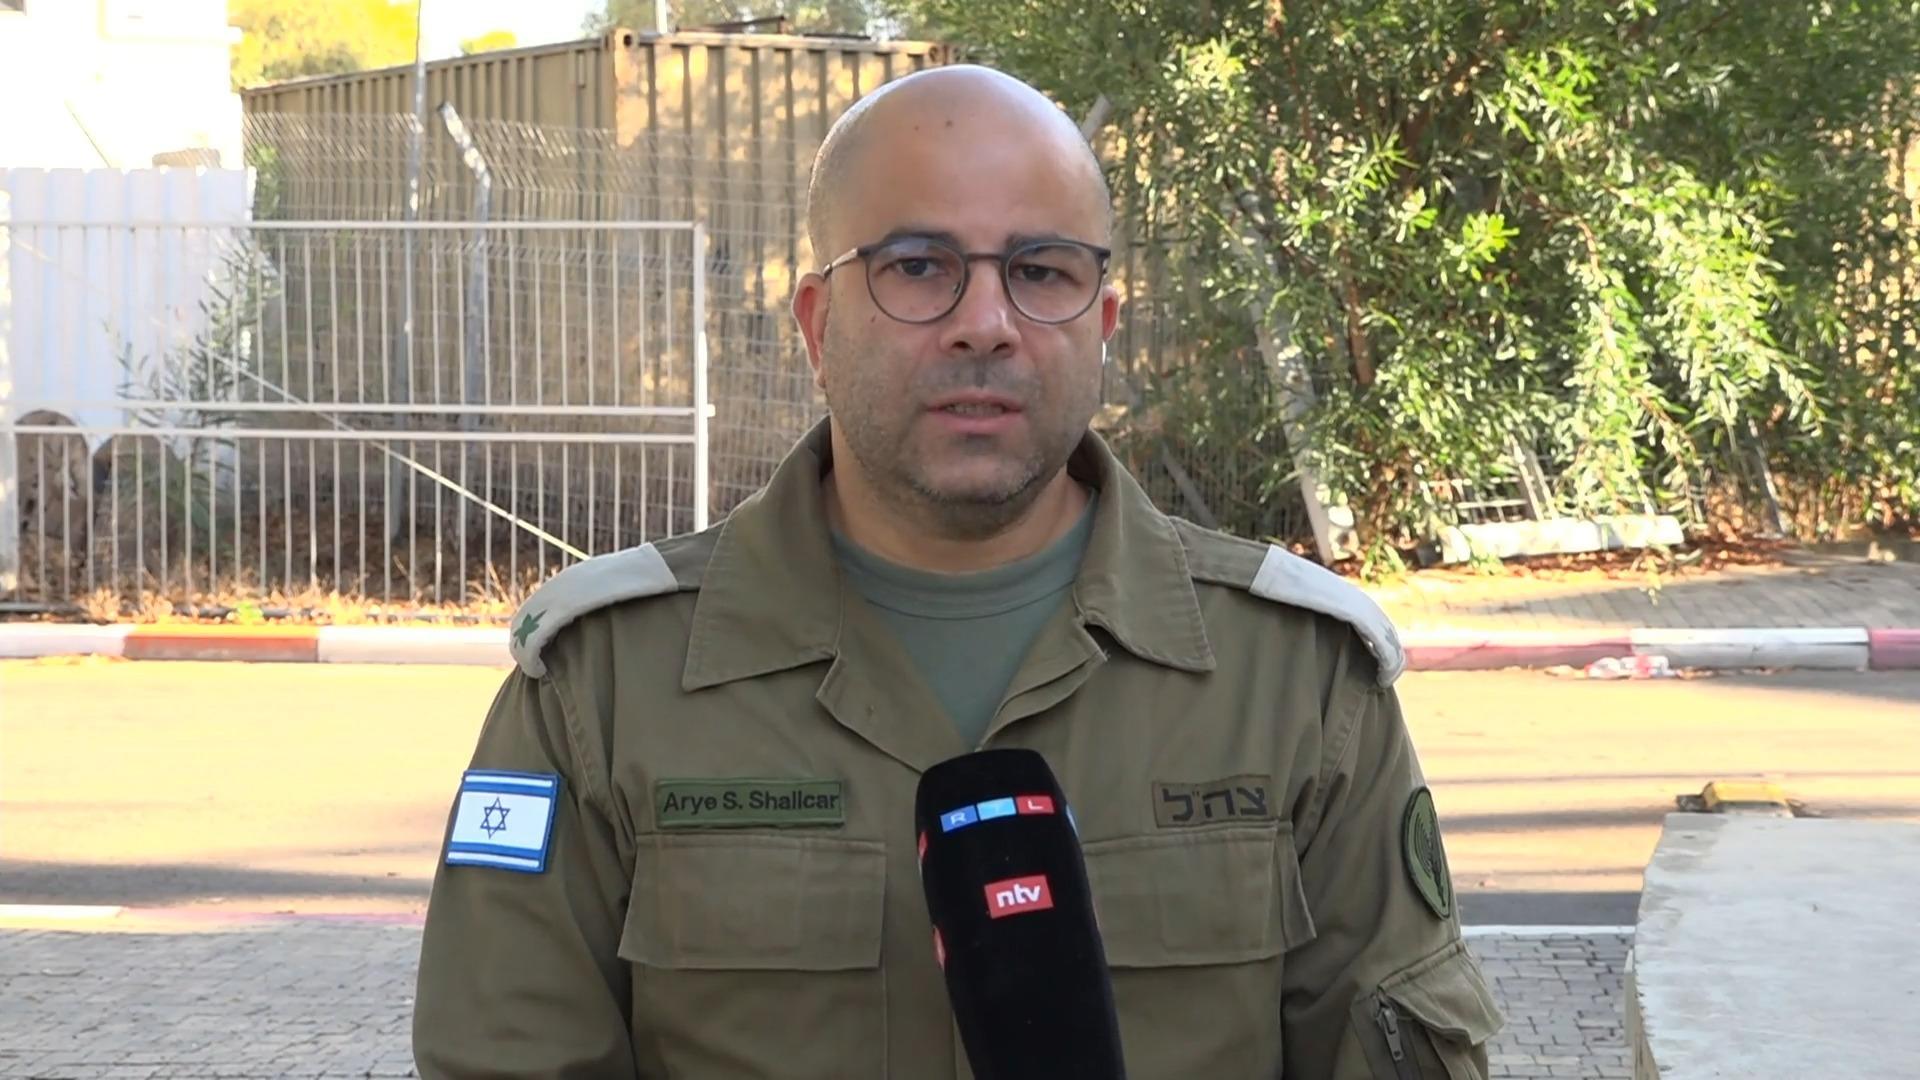 "Ich bereite mich auf schwere Tage, Wochen oder Monate vor" Sprecher der israelischen Armee im RTL-Interview